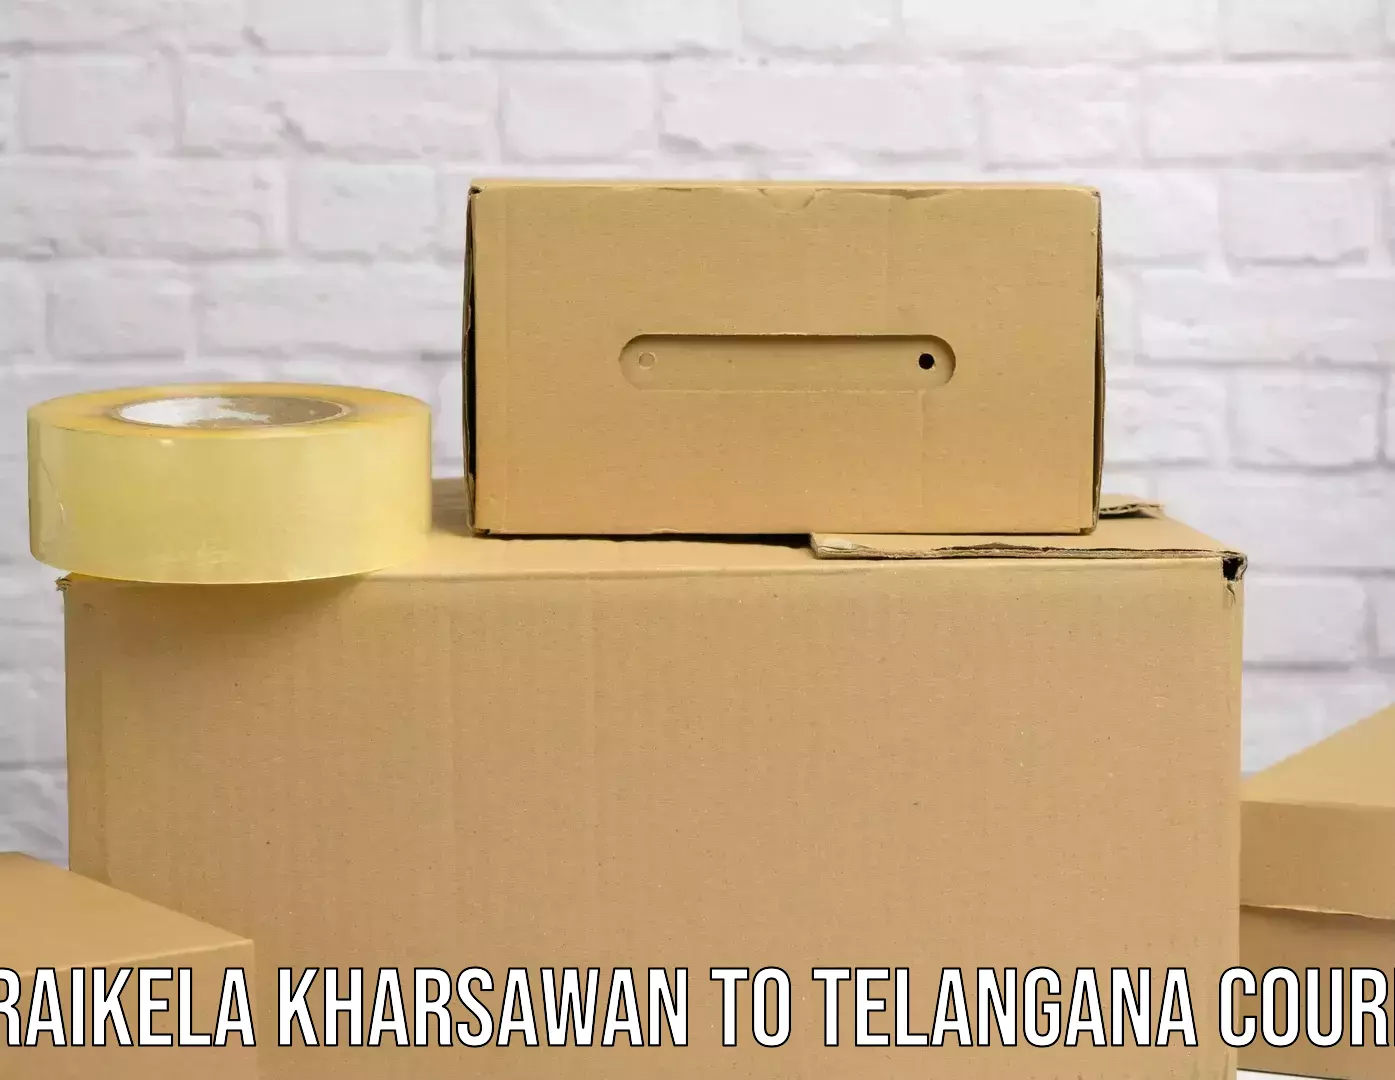 Flexible delivery schedules Seraikela Kharsawan to Manuguru